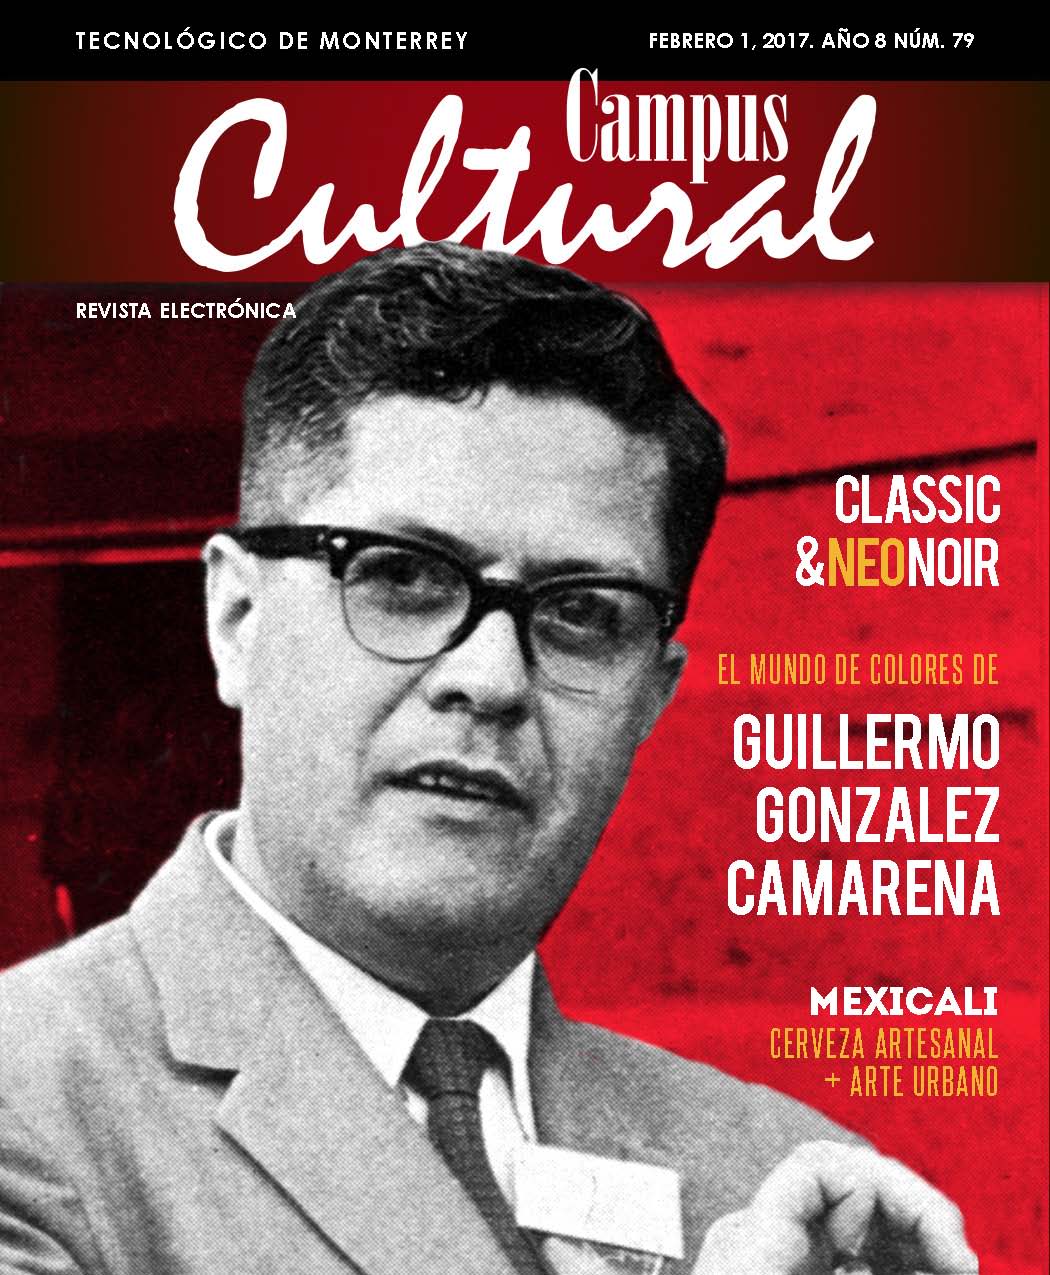 González Camarena, Mexicali, Catas musicales, Cervantes, Cinema 16; Pasión por la lectura, Rubén Dario, Nezahualcóyotl, Eguenio 